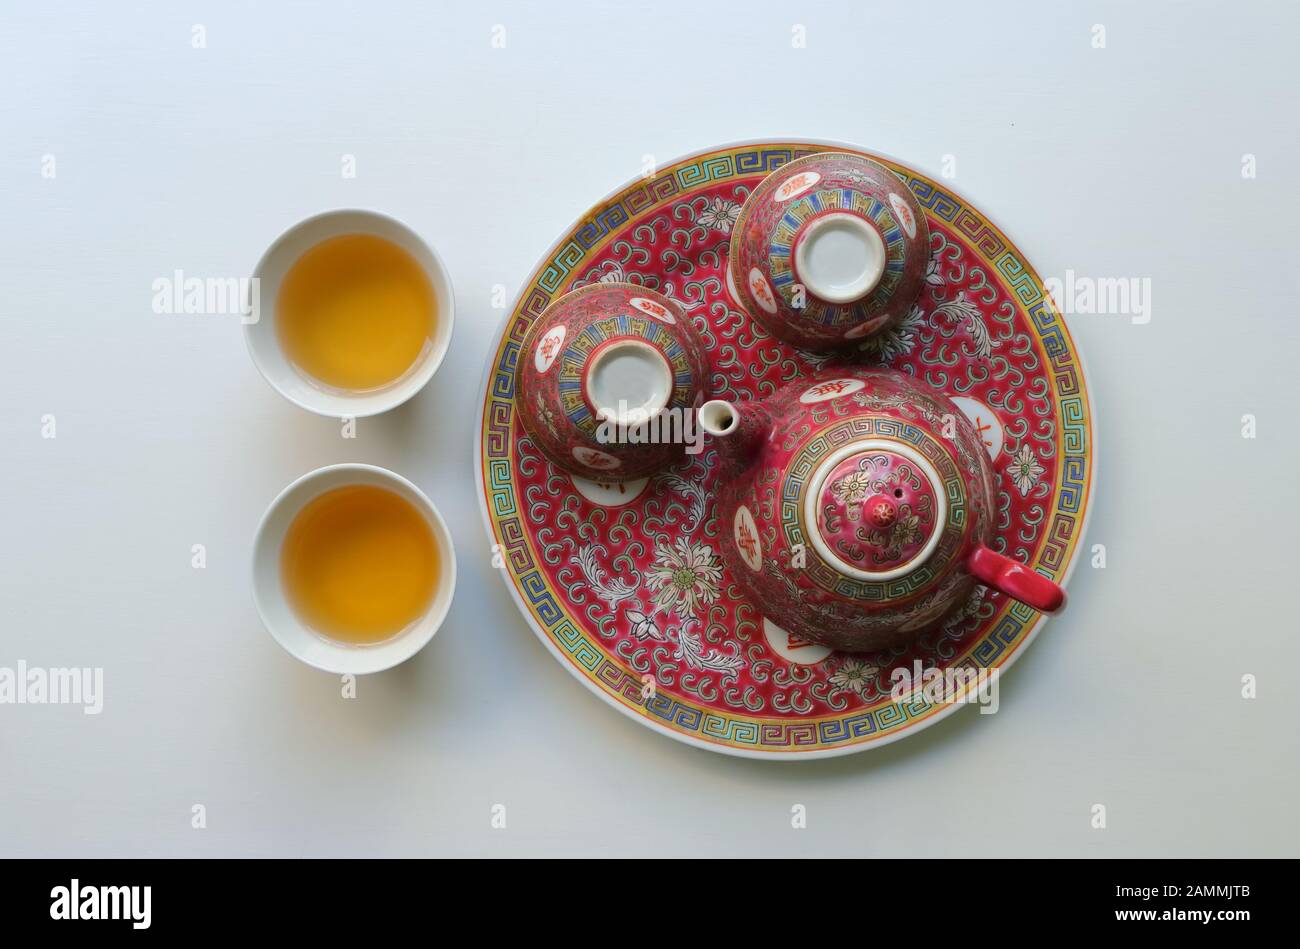 Vintage China Porzellan Teeset, Teekanne und zwei leere Tassen auf Untertasse, die anderen mit Tee gefüllt, die chinesischen Schriftzeichen bedeuten Langlebigkeit Stockfoto